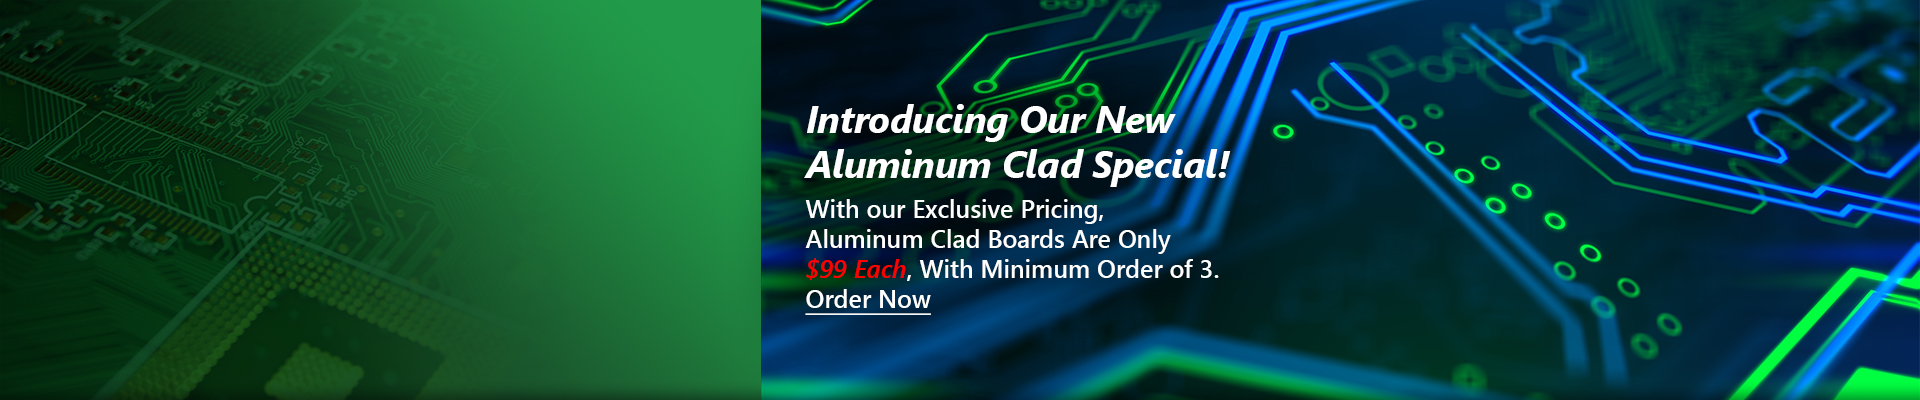 Aluminum Clad Special